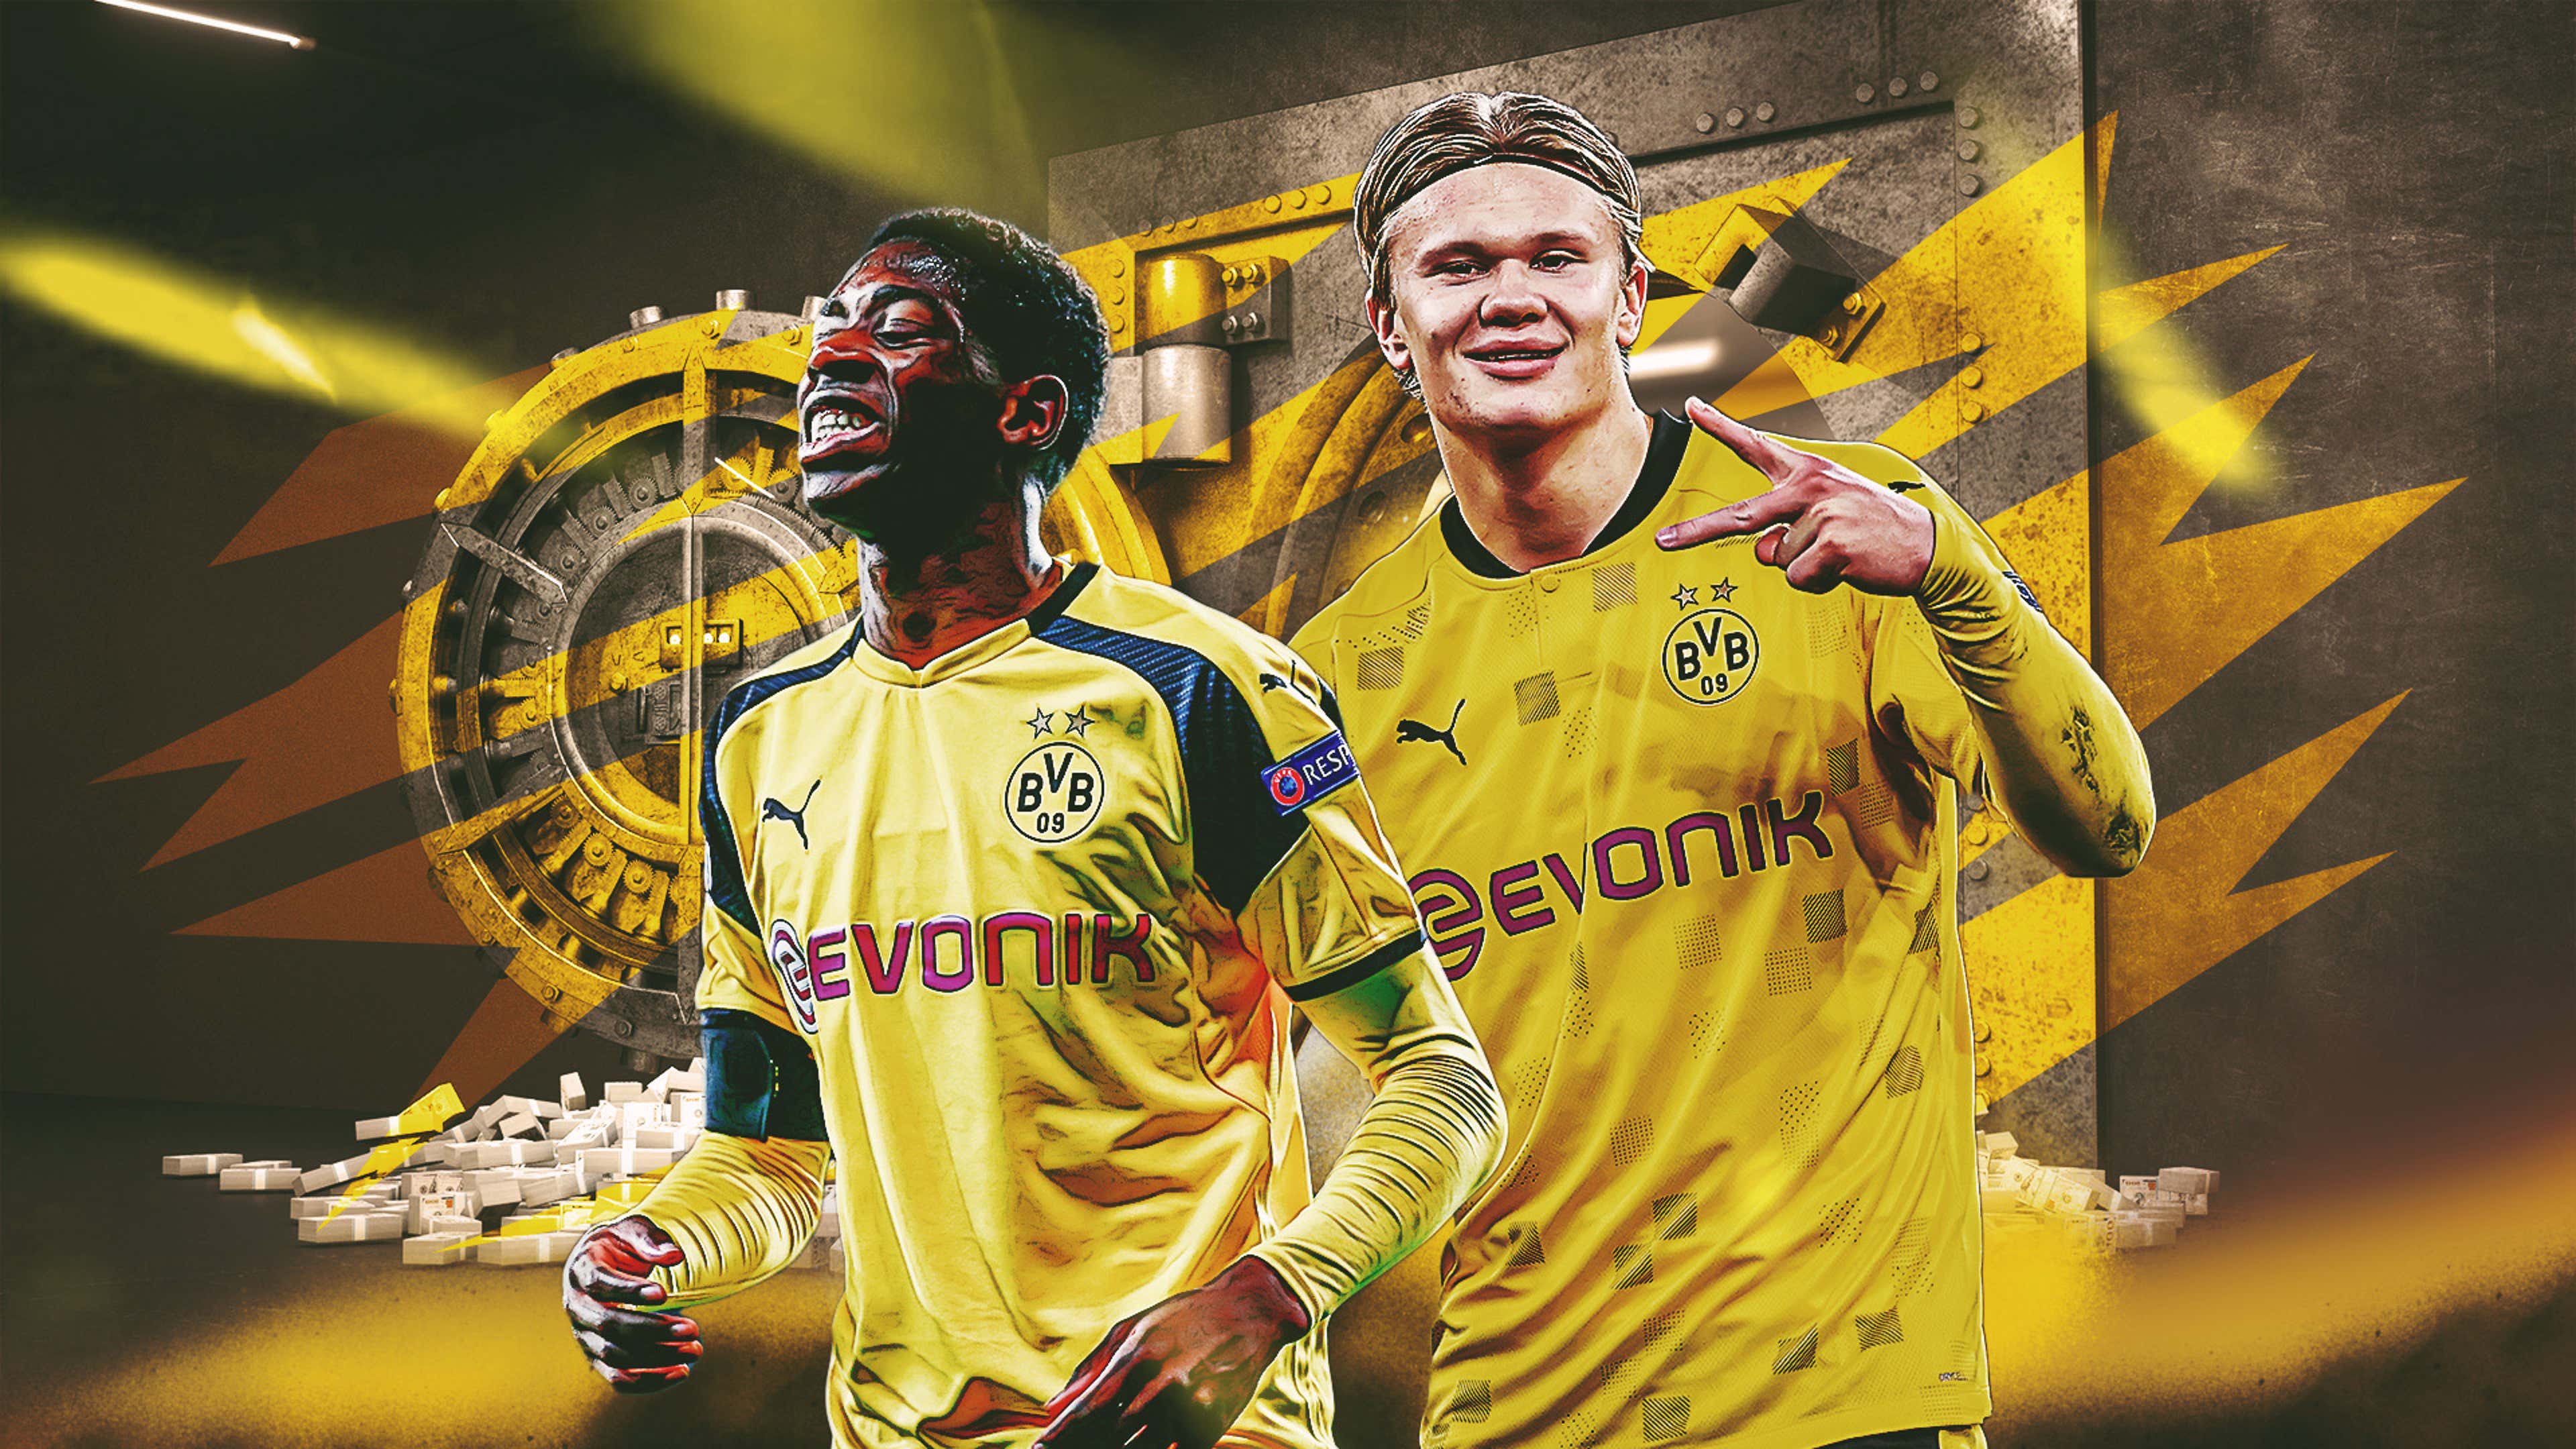 Dortmund close in on Mkhitaryan transfer, Borussia Dortmund